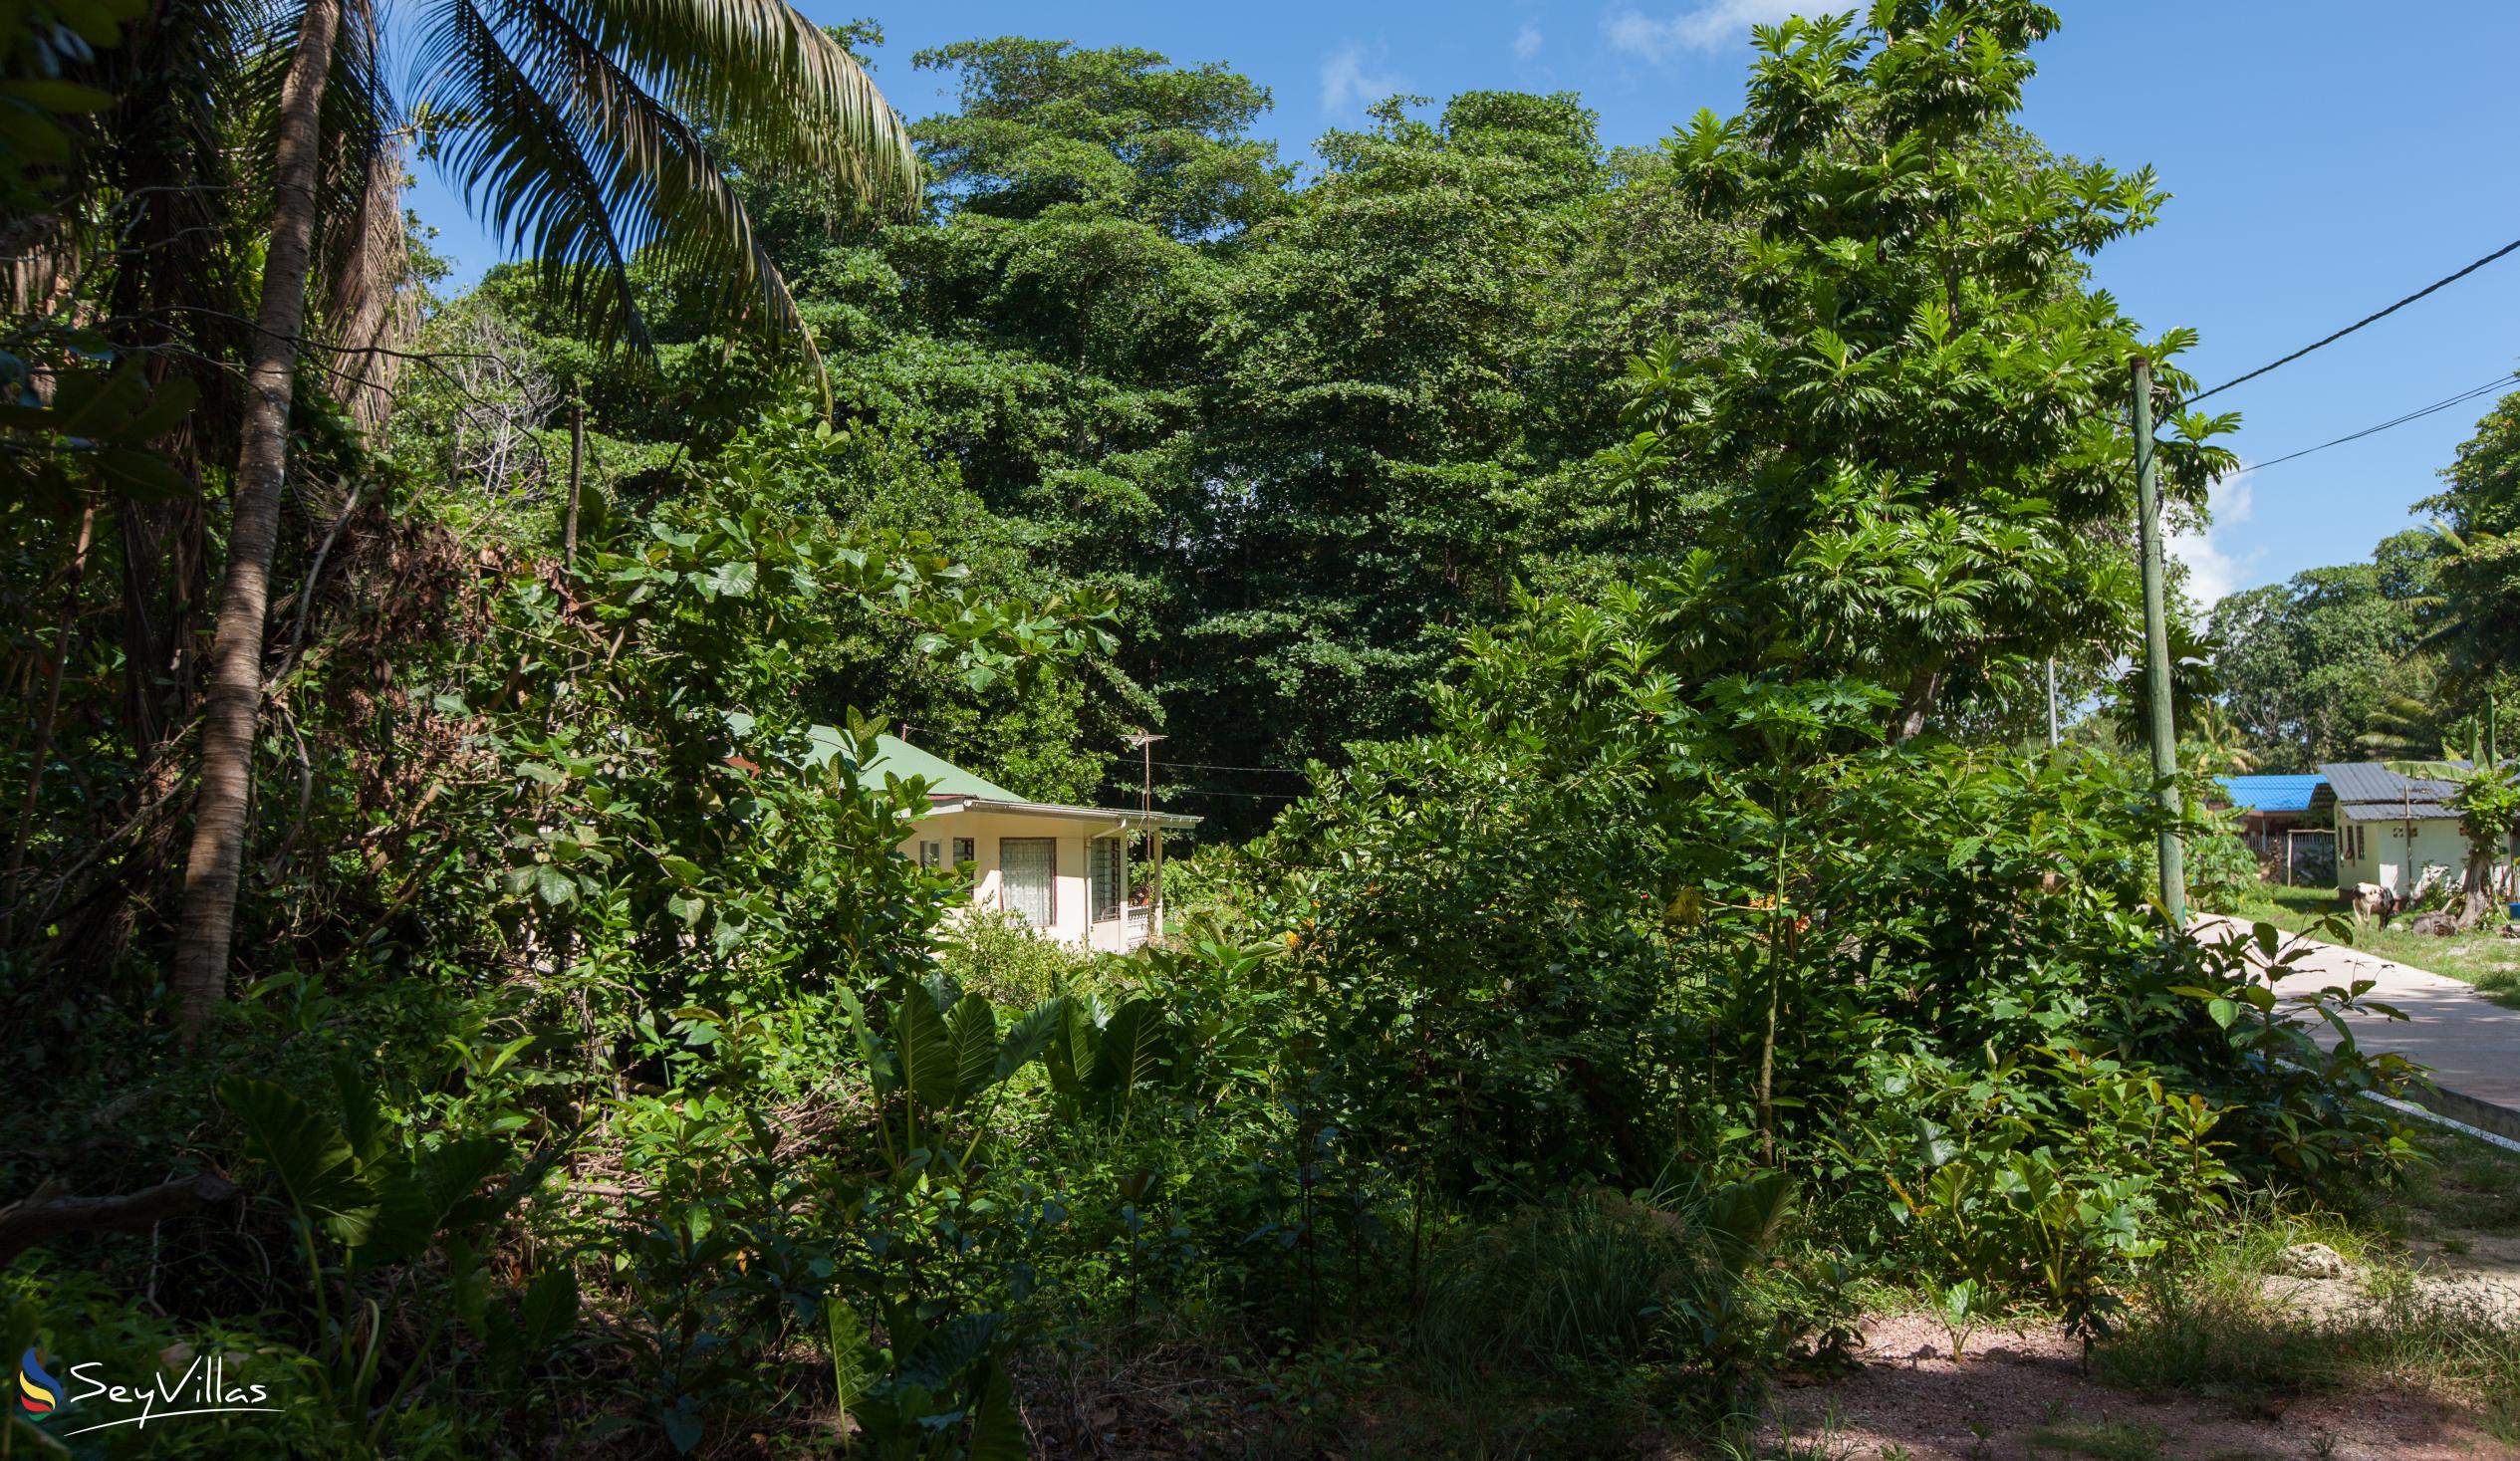 Foto 56: Tannette's Villa - Lage - La Digue (Seychellen)